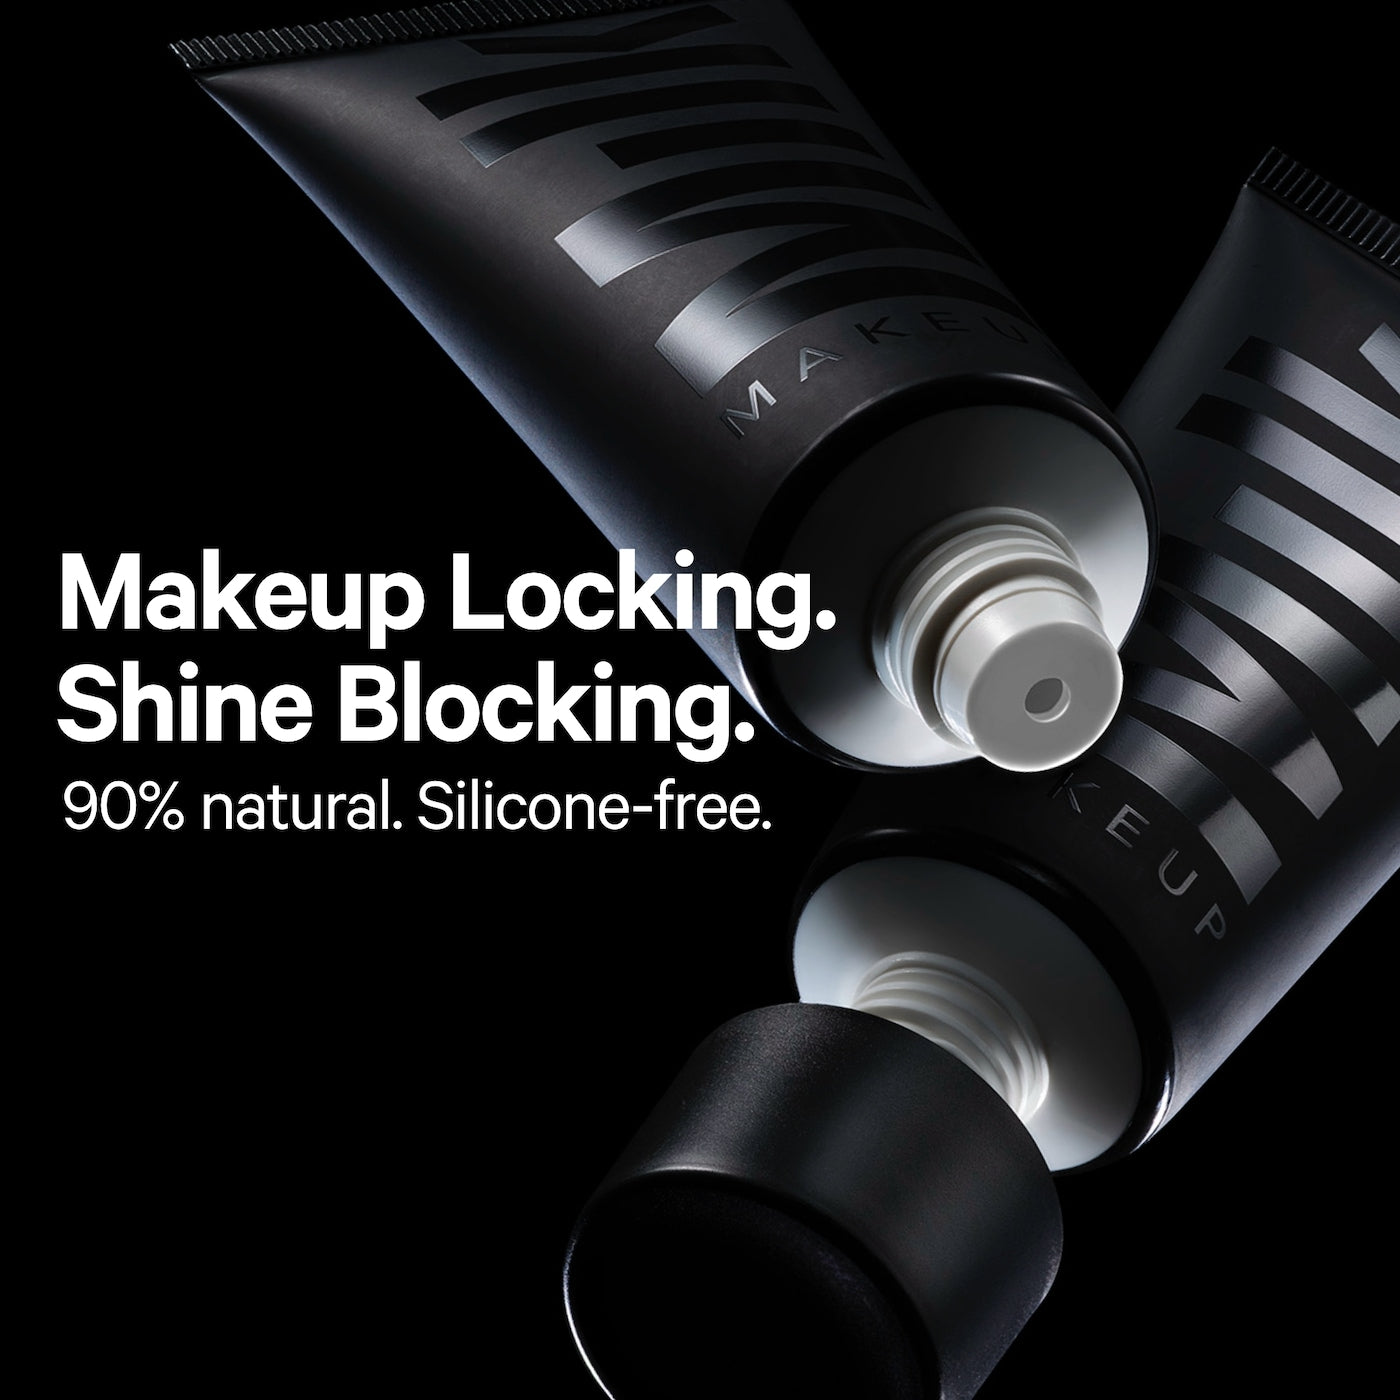 Pore Eclipse Mattifying + Blurring Makeup Primer